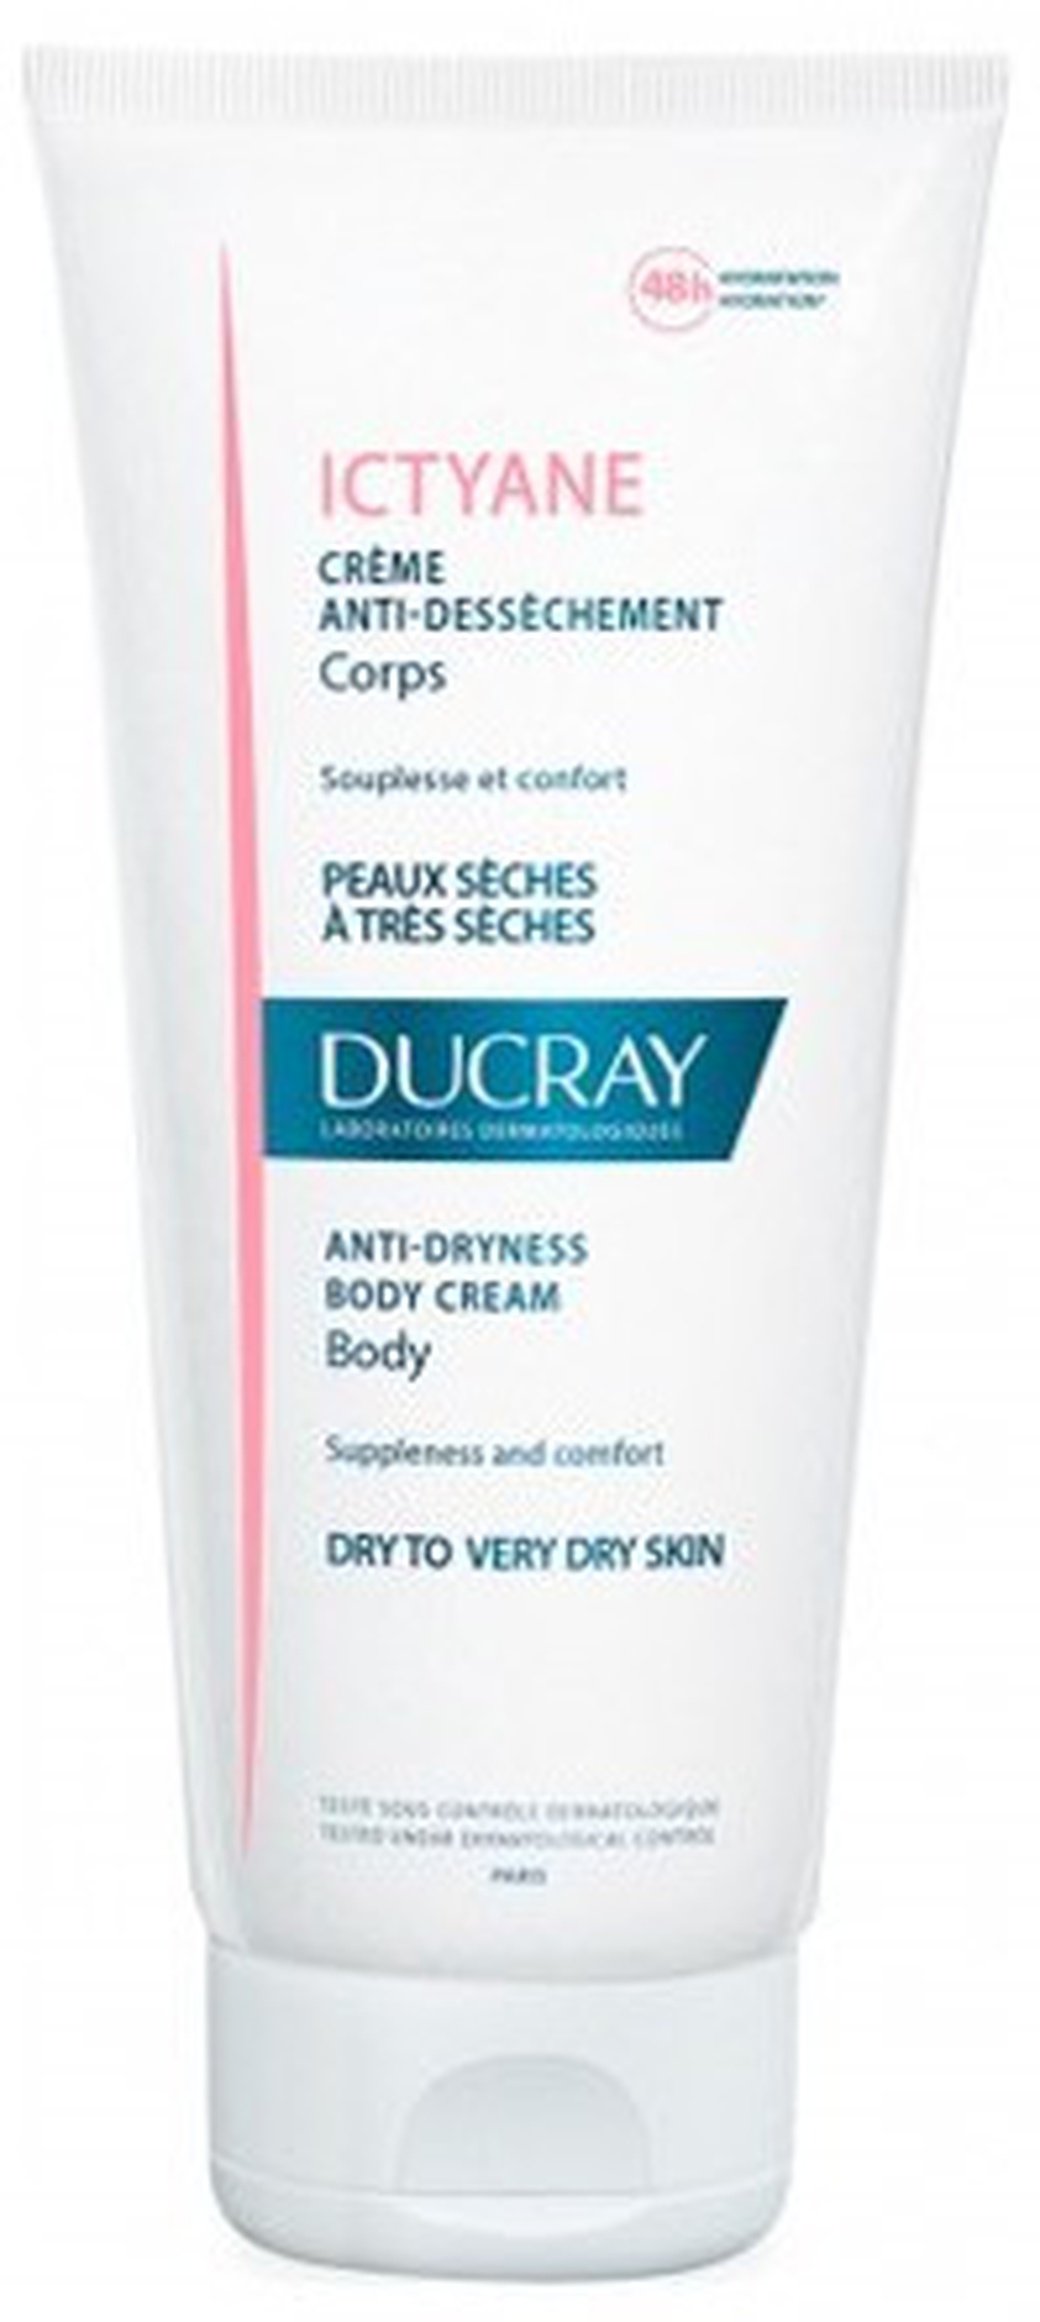 Ducray Ictyane смягчающий увлажняющий крем для сухой кожи 200 мл фото